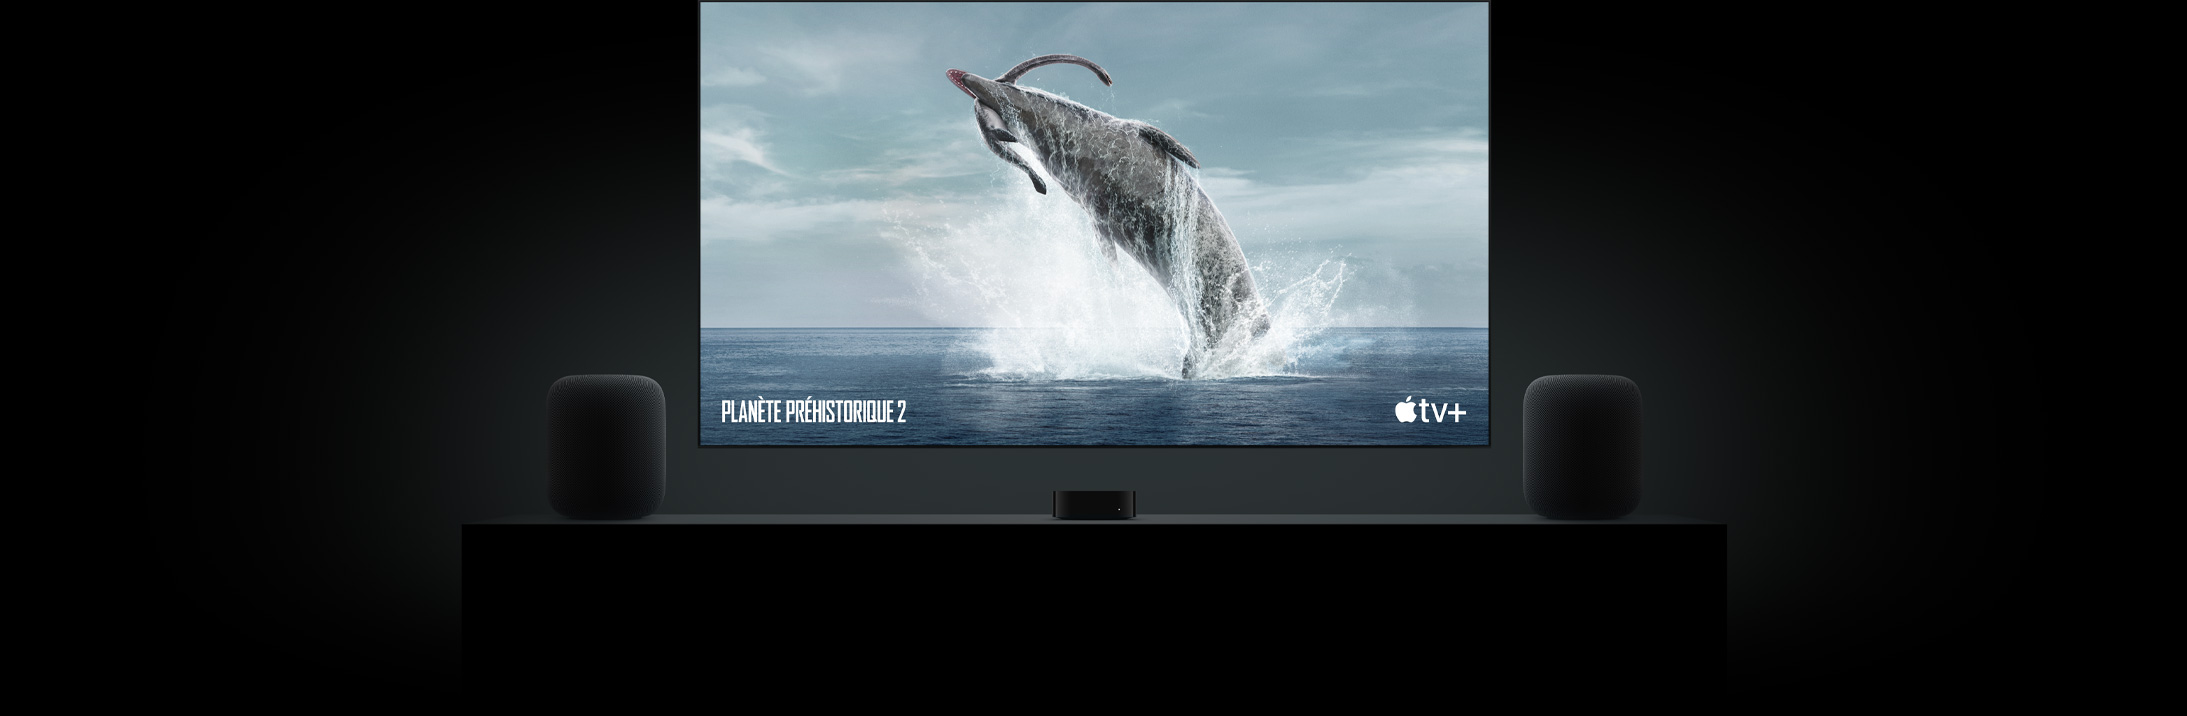 Grand téléviseur à écran plat présentant l’image nette d’un dinosaure de Planète préhistorique. L’appareil est suspendu au-dessus d’une Apple TV et encadré de deux HomePod posés sur un meuble de salon.